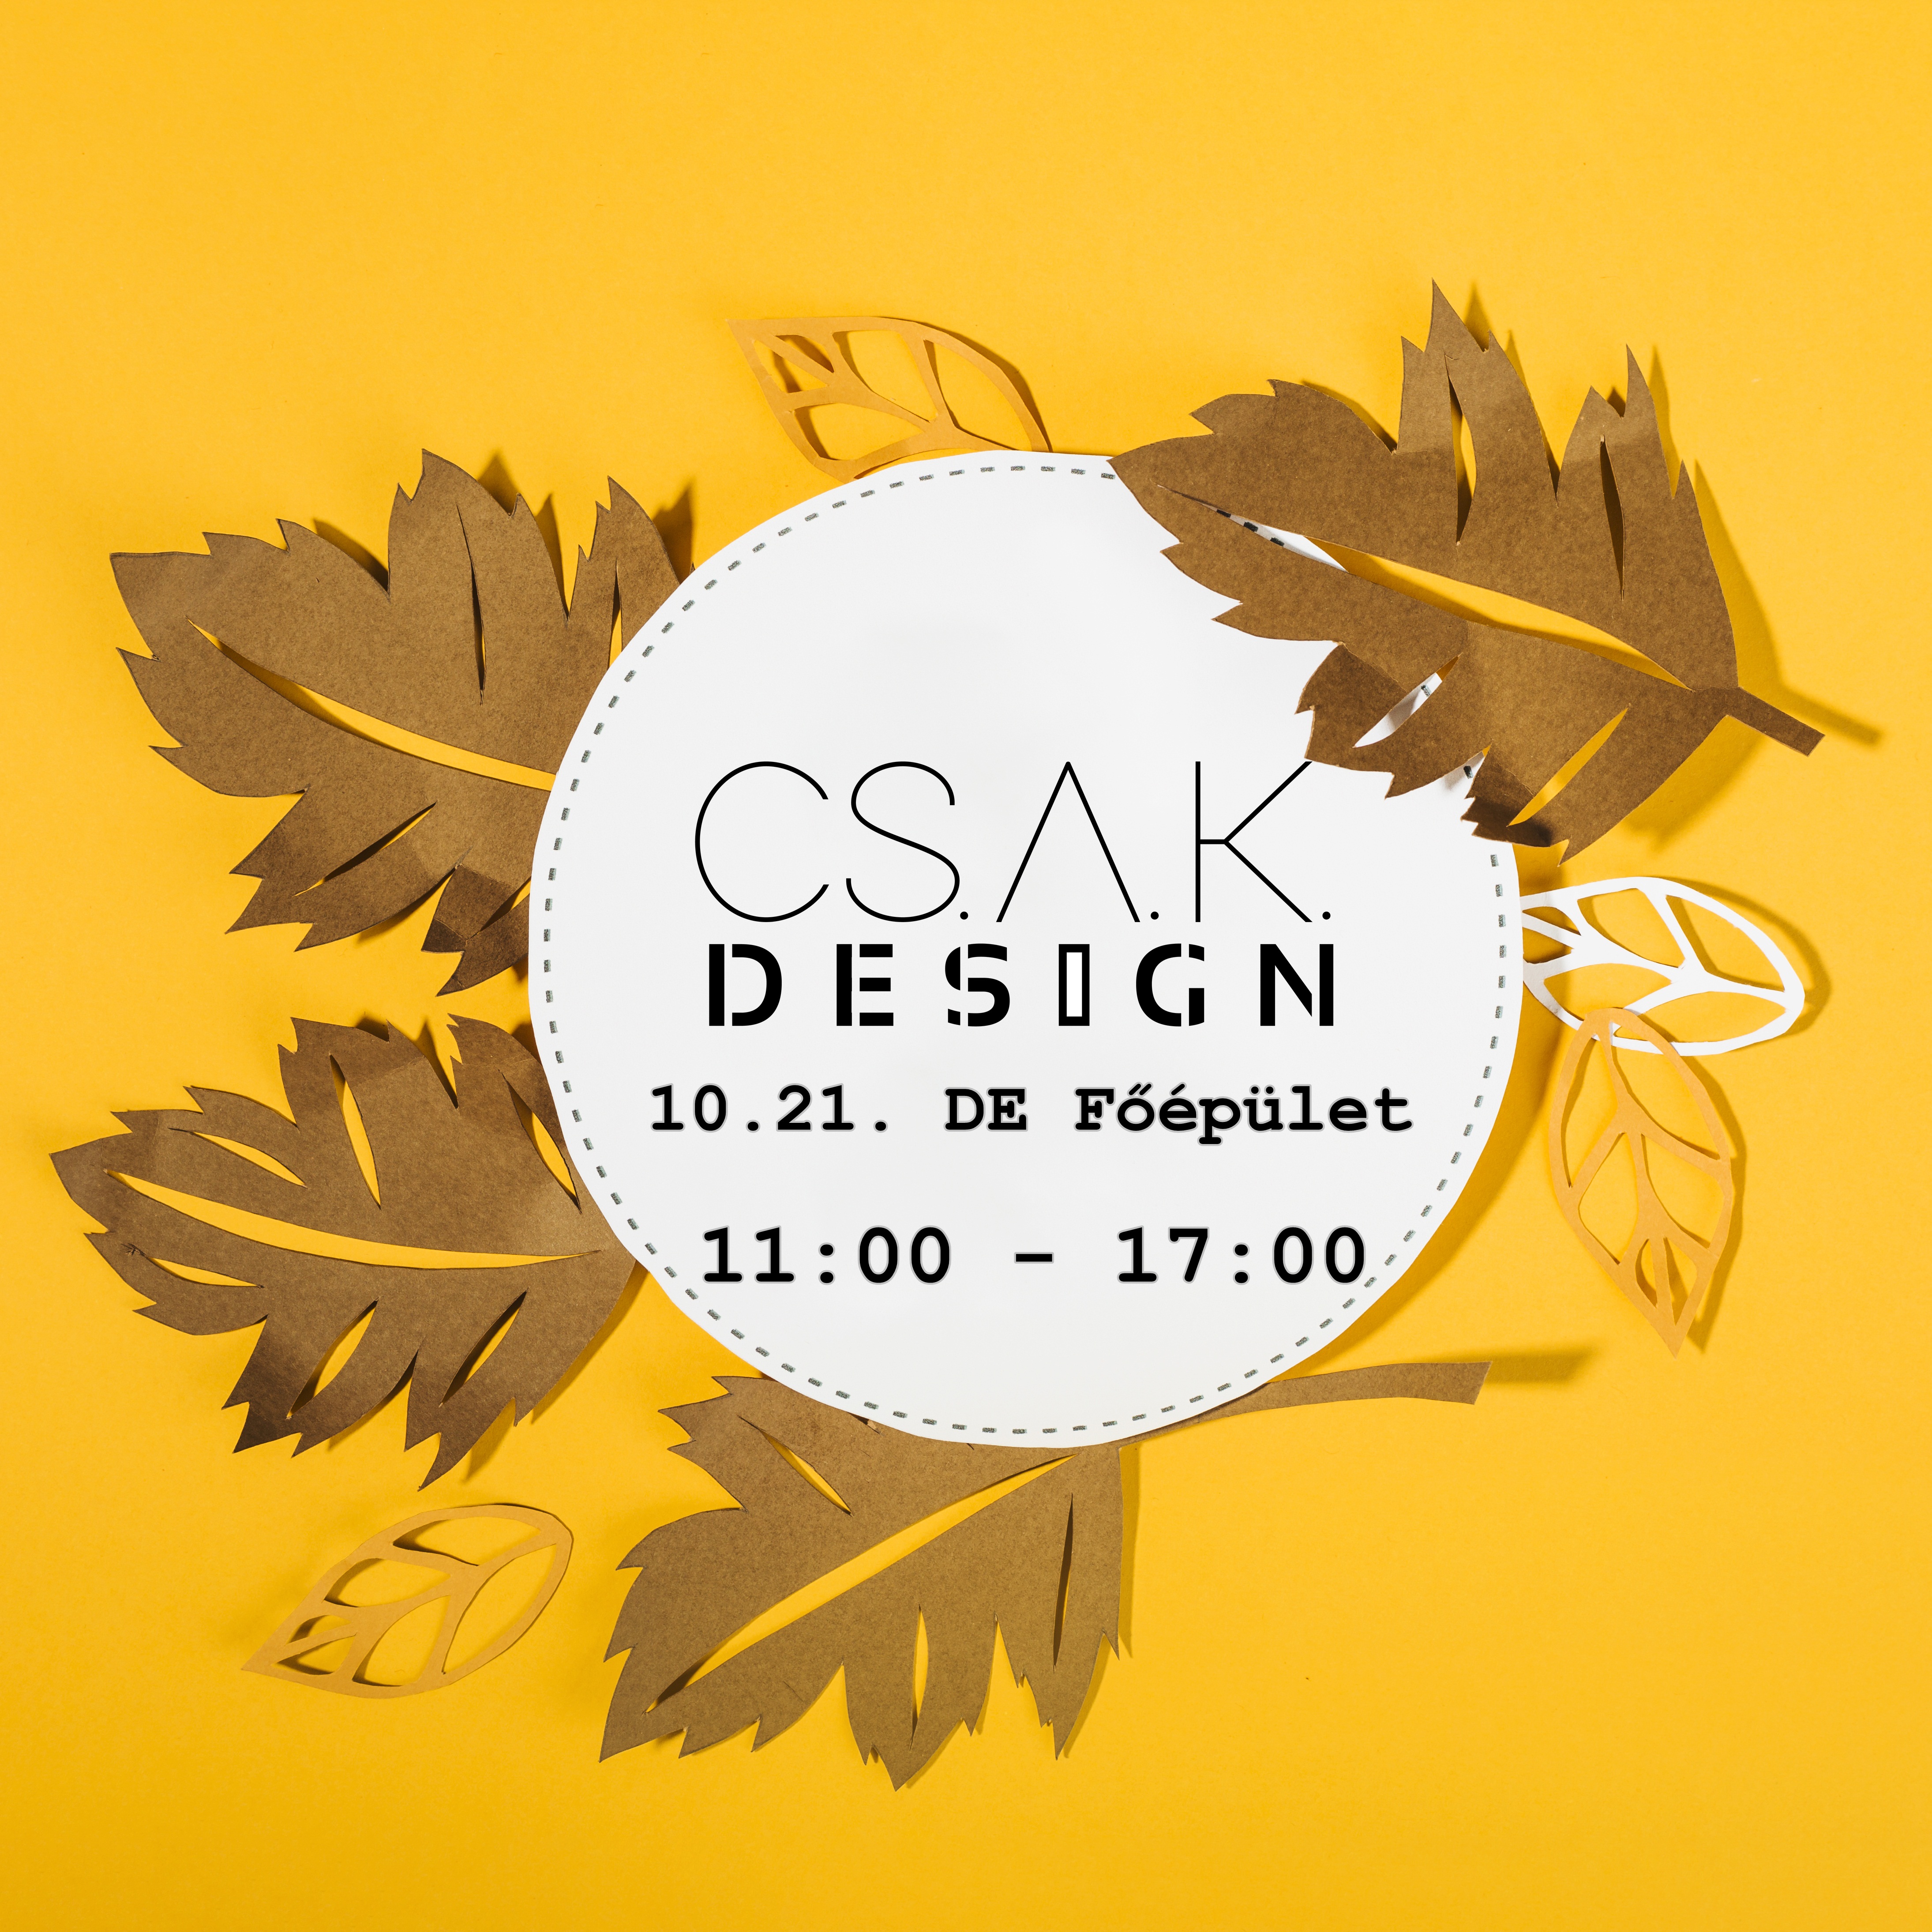 Már az ünnepekre készülve: októberben is CSAK Design